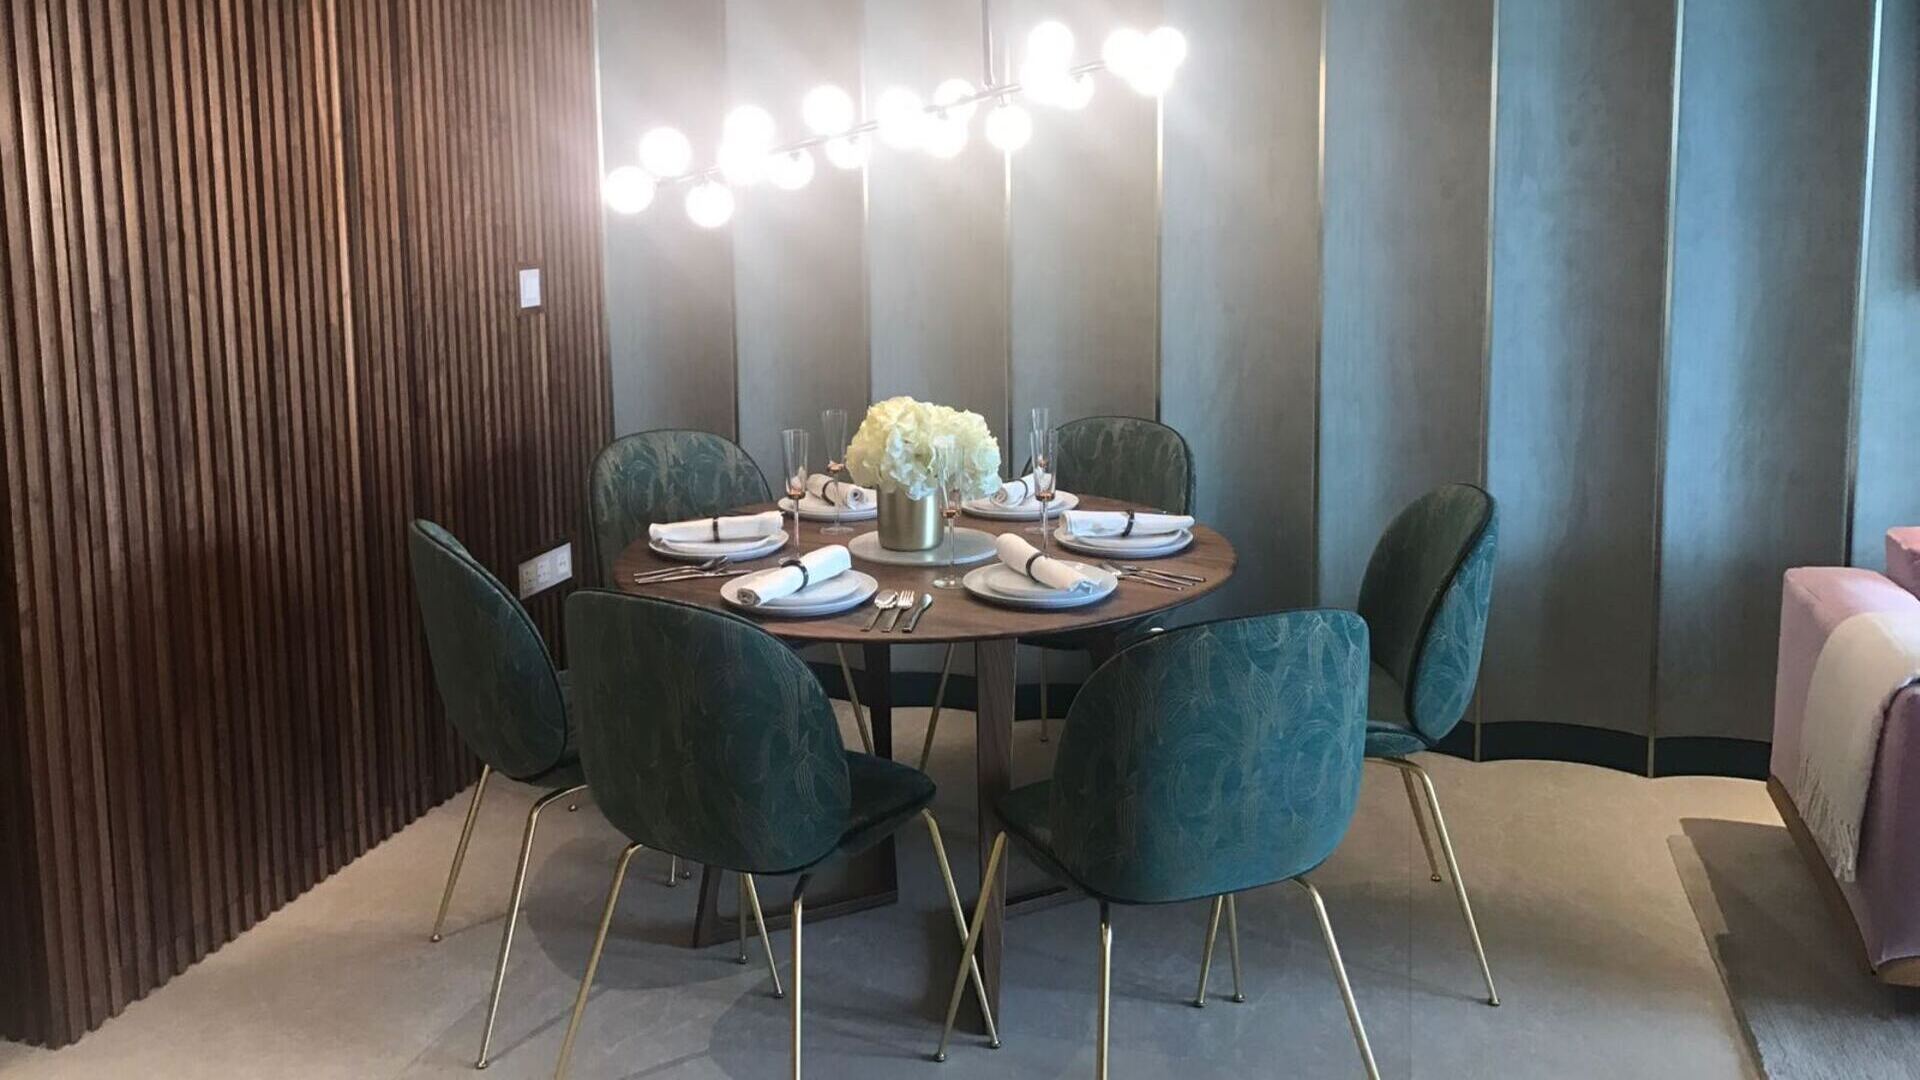 Marina One Residences Penthouse Singapore luxury apartments Dining Area